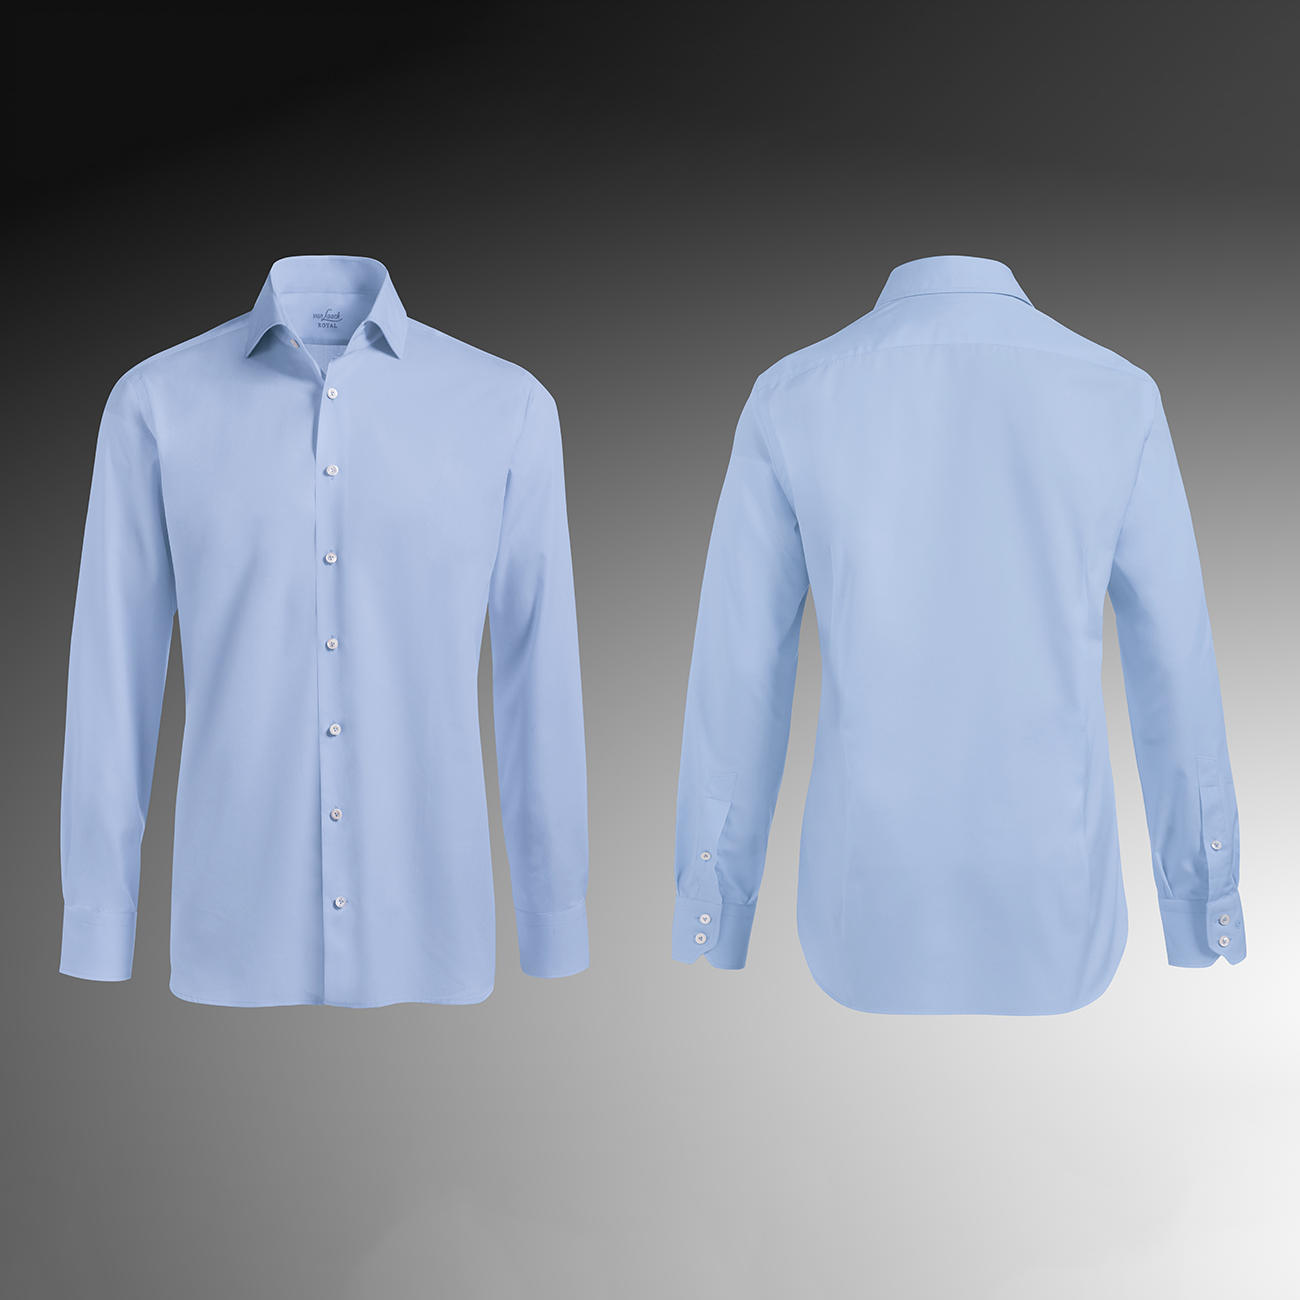 Van Laack Shirts tailor fit, single button cuffs, light blue RJGWIXA